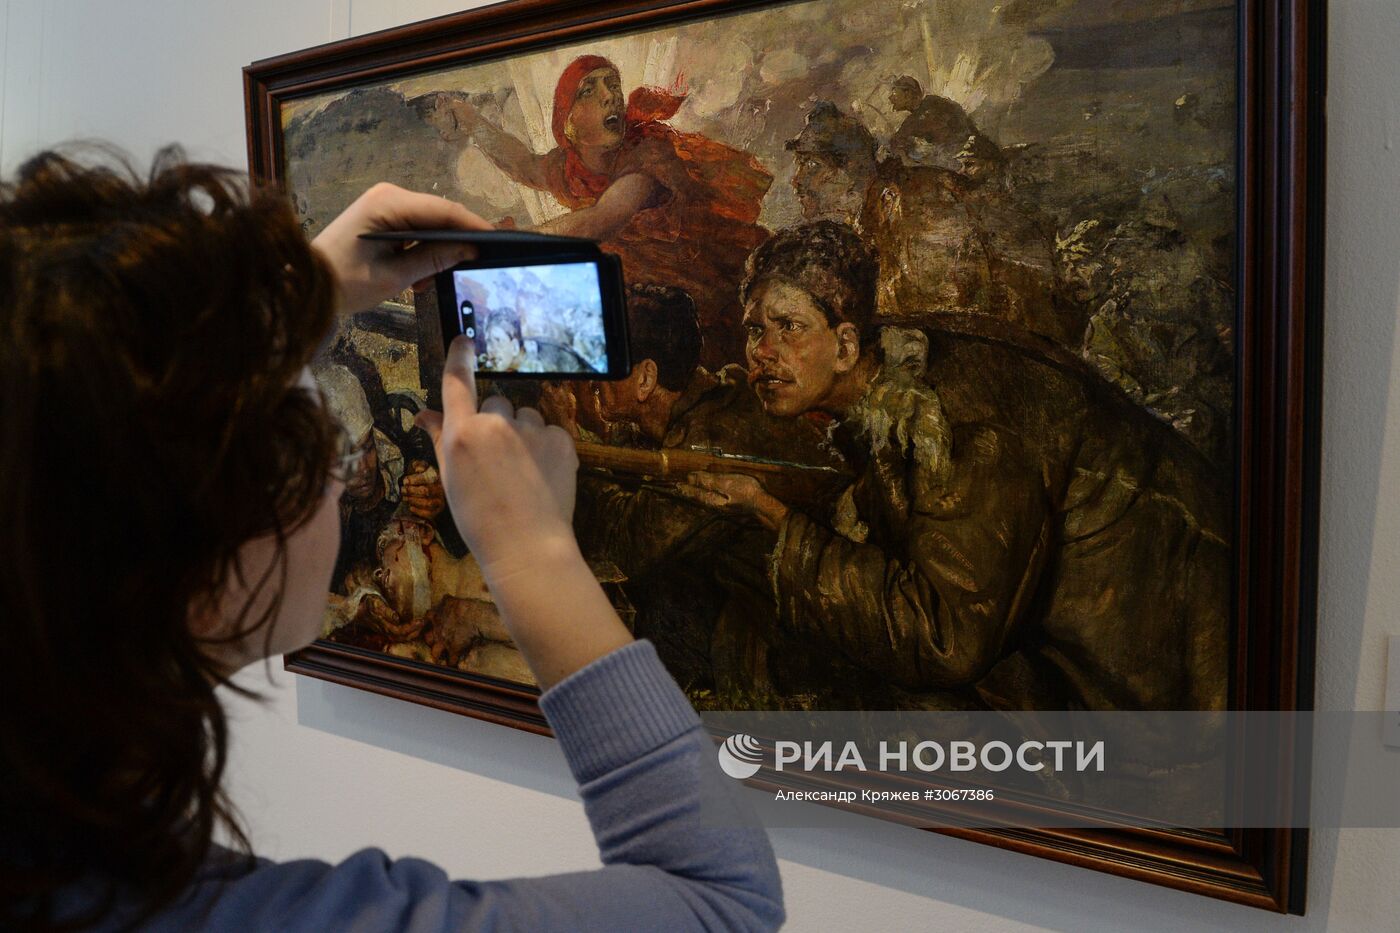 Открытие выставки "Событие, потрясшее мир" в Новосибирске